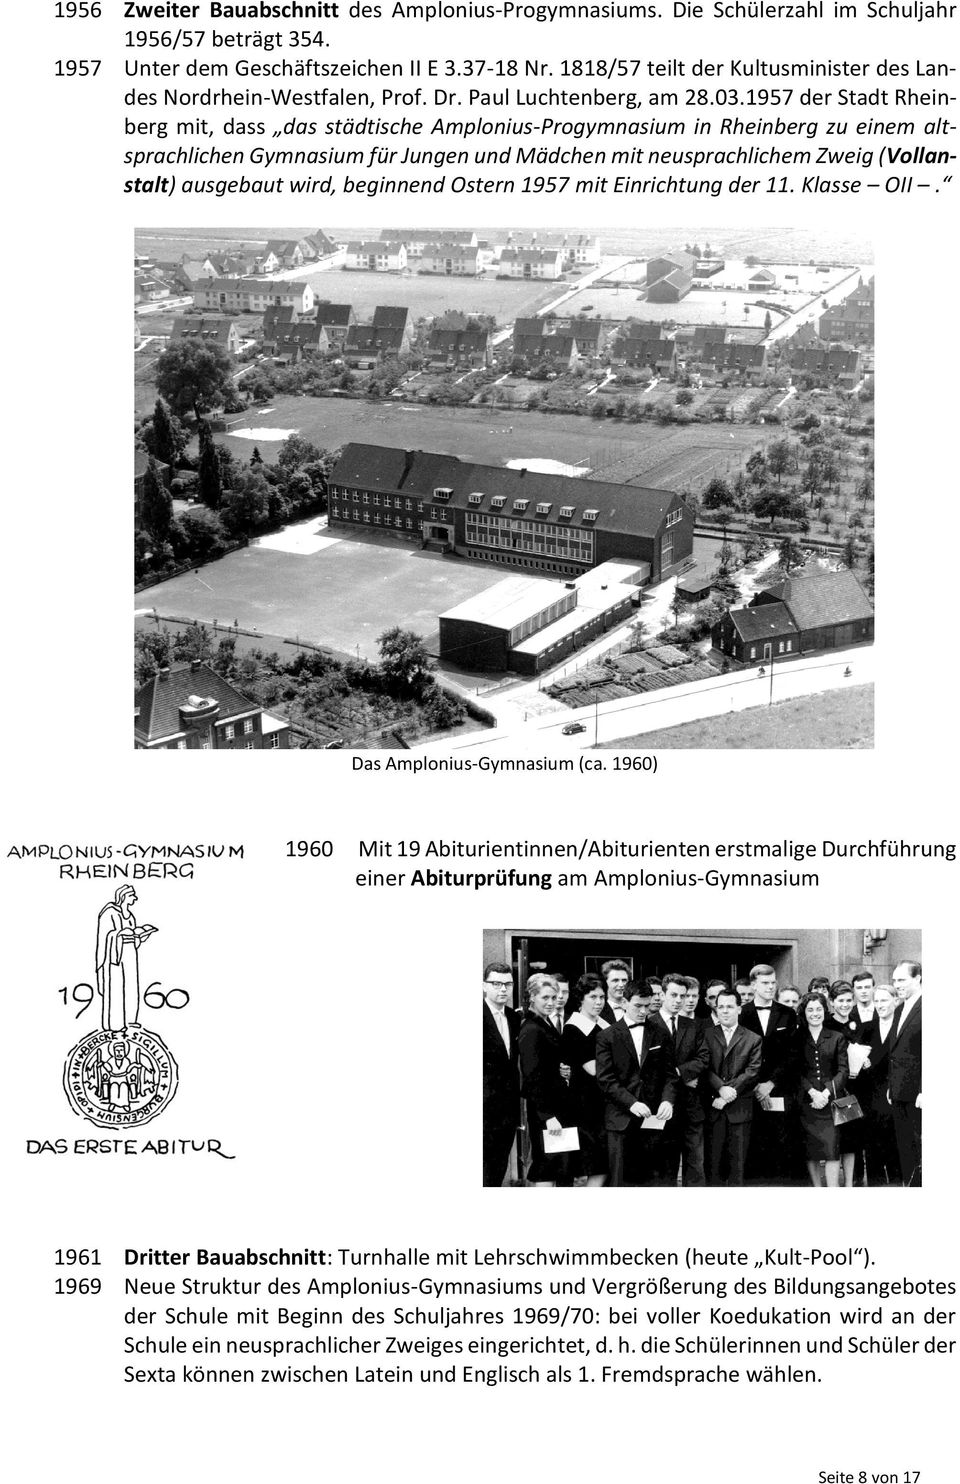 1957 der Stadt Rheinberg mit, dass das städtische Amplonius-Progymnasium in Rheinberg zu einem altsprachlichen Gymnasium für Jungen und Mädchen mit neusprachlichem Zweig (Vollanstalt) ausgebaut wird,